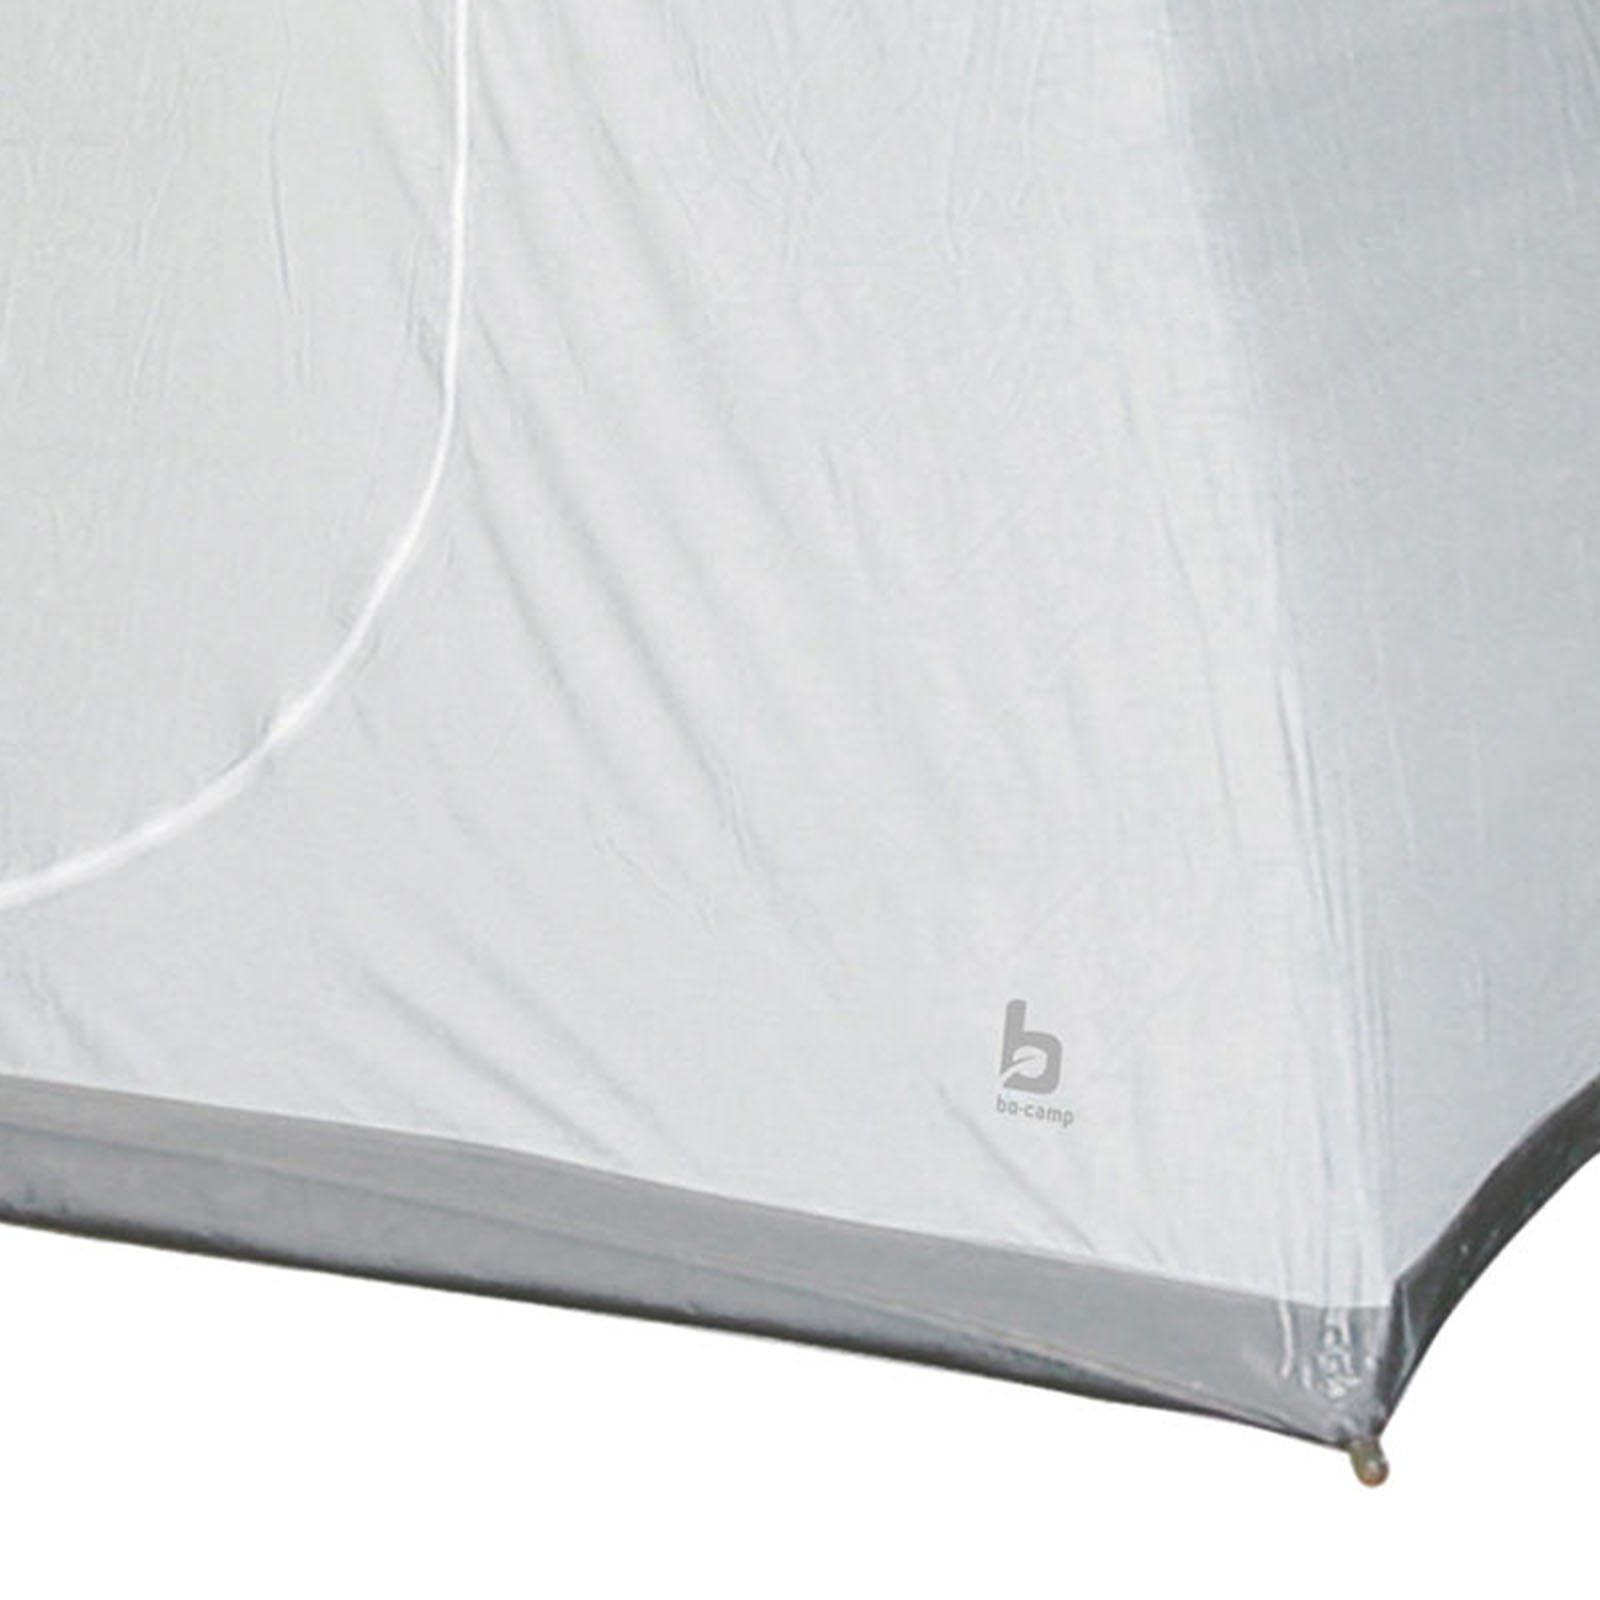 Universal Innenzelt Innenzelt Zelt Camping, Bo-Camp Für Schlaf 200x135x175 Kabine Vorzelt